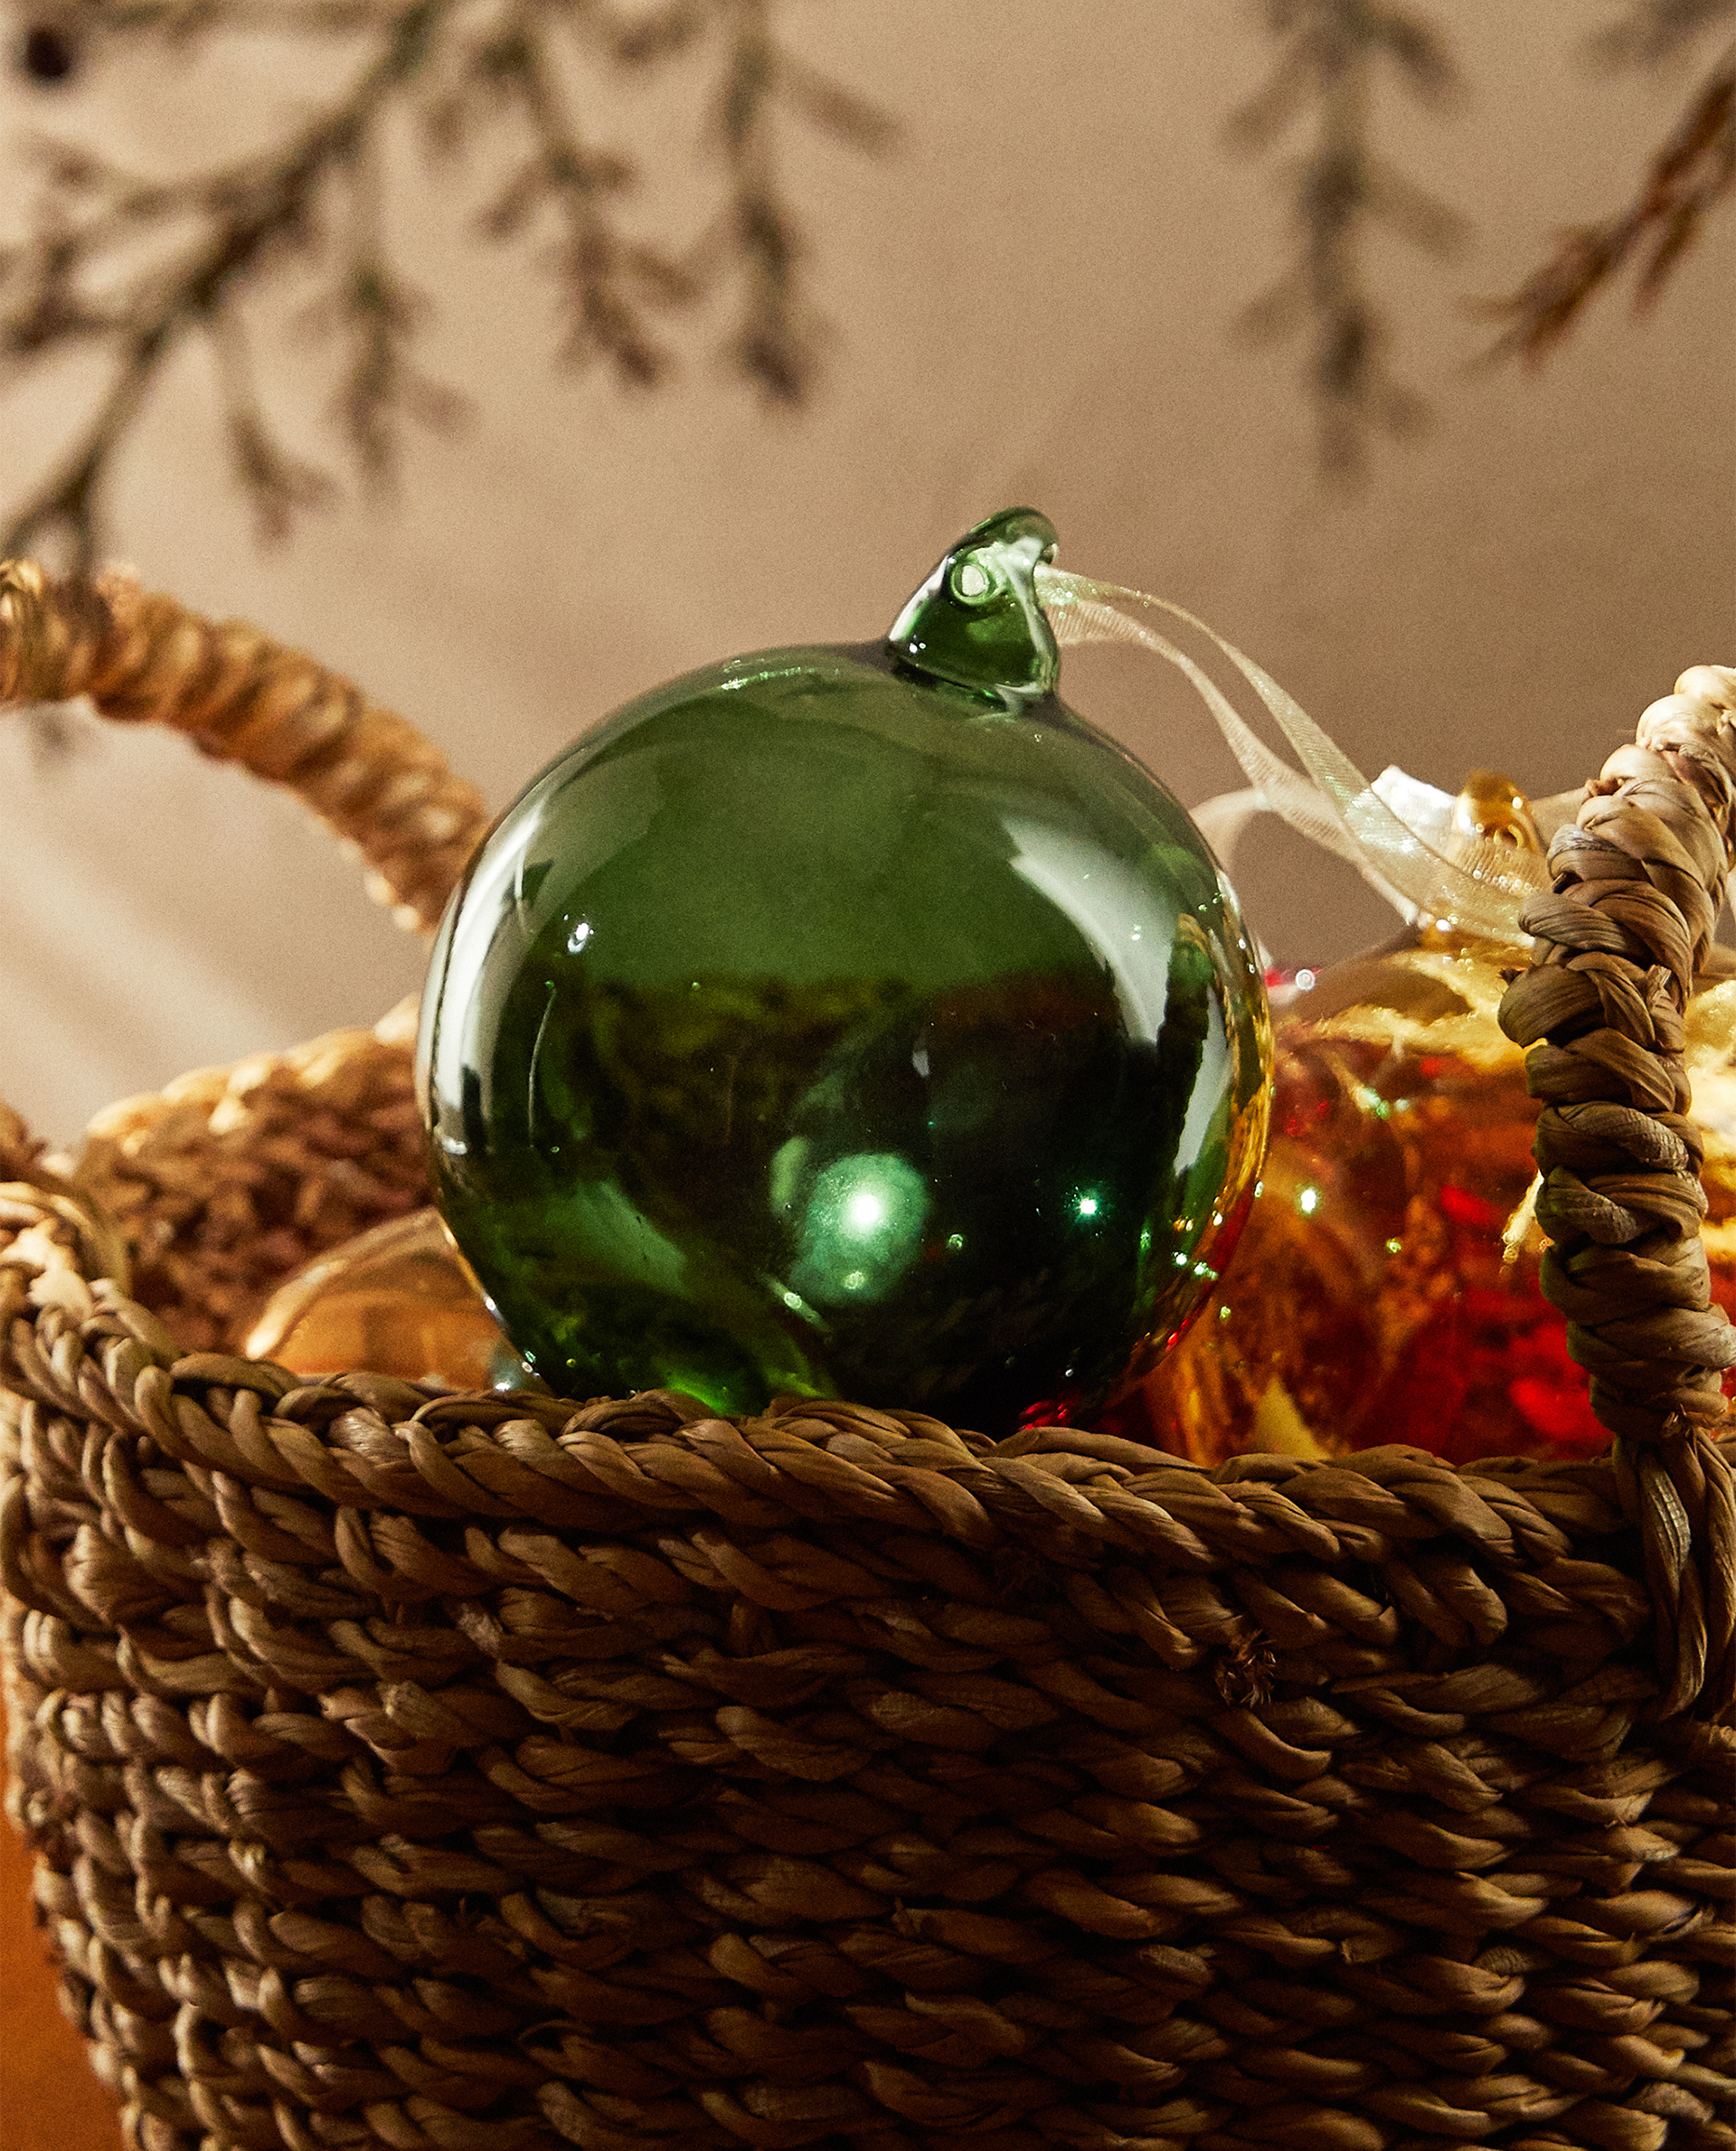 Bola para el árbol de Navidad monocolor de vidrio. Incluye cinta para colgar. Zara Home (5,99 euros).